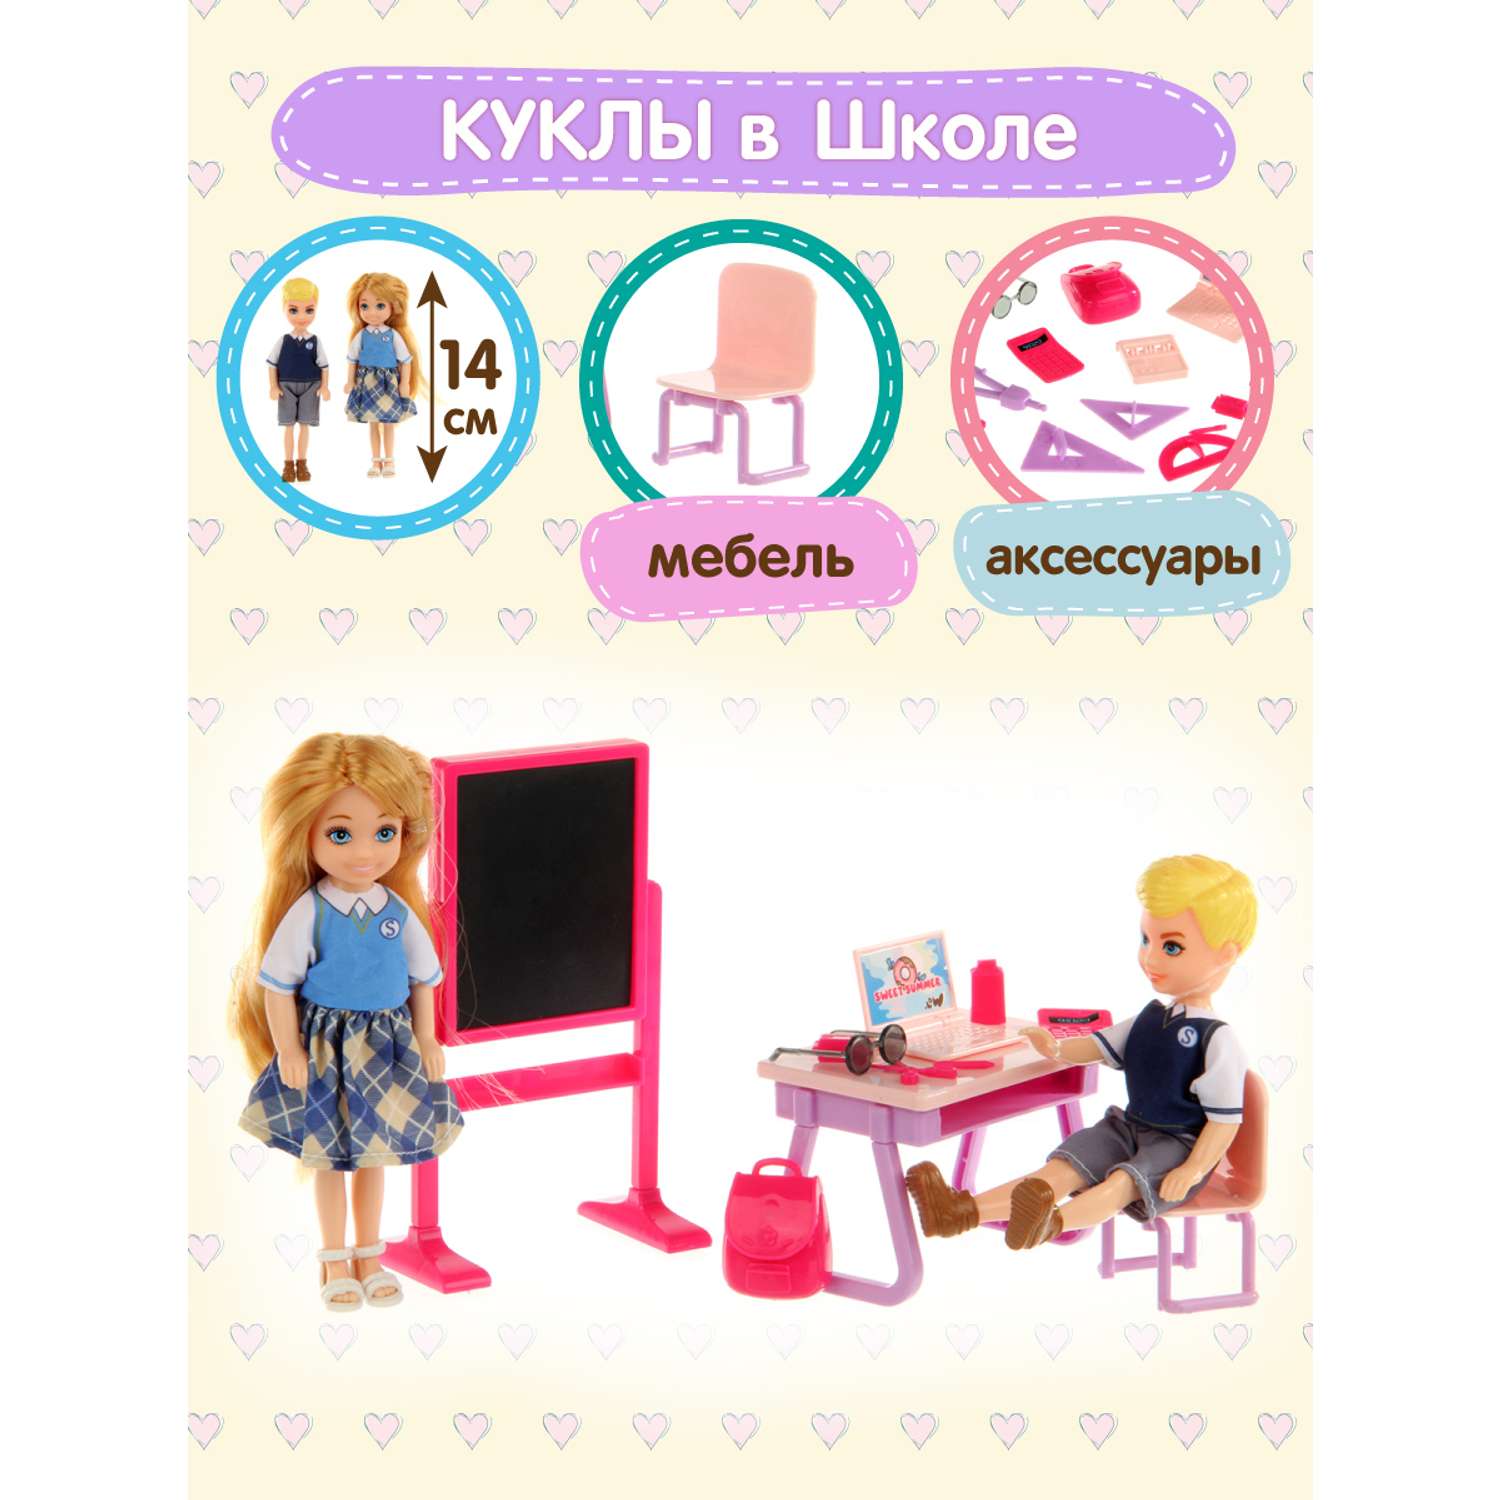 Купить детские книги и игрушки в интернет магазине kormstroytorg.ru